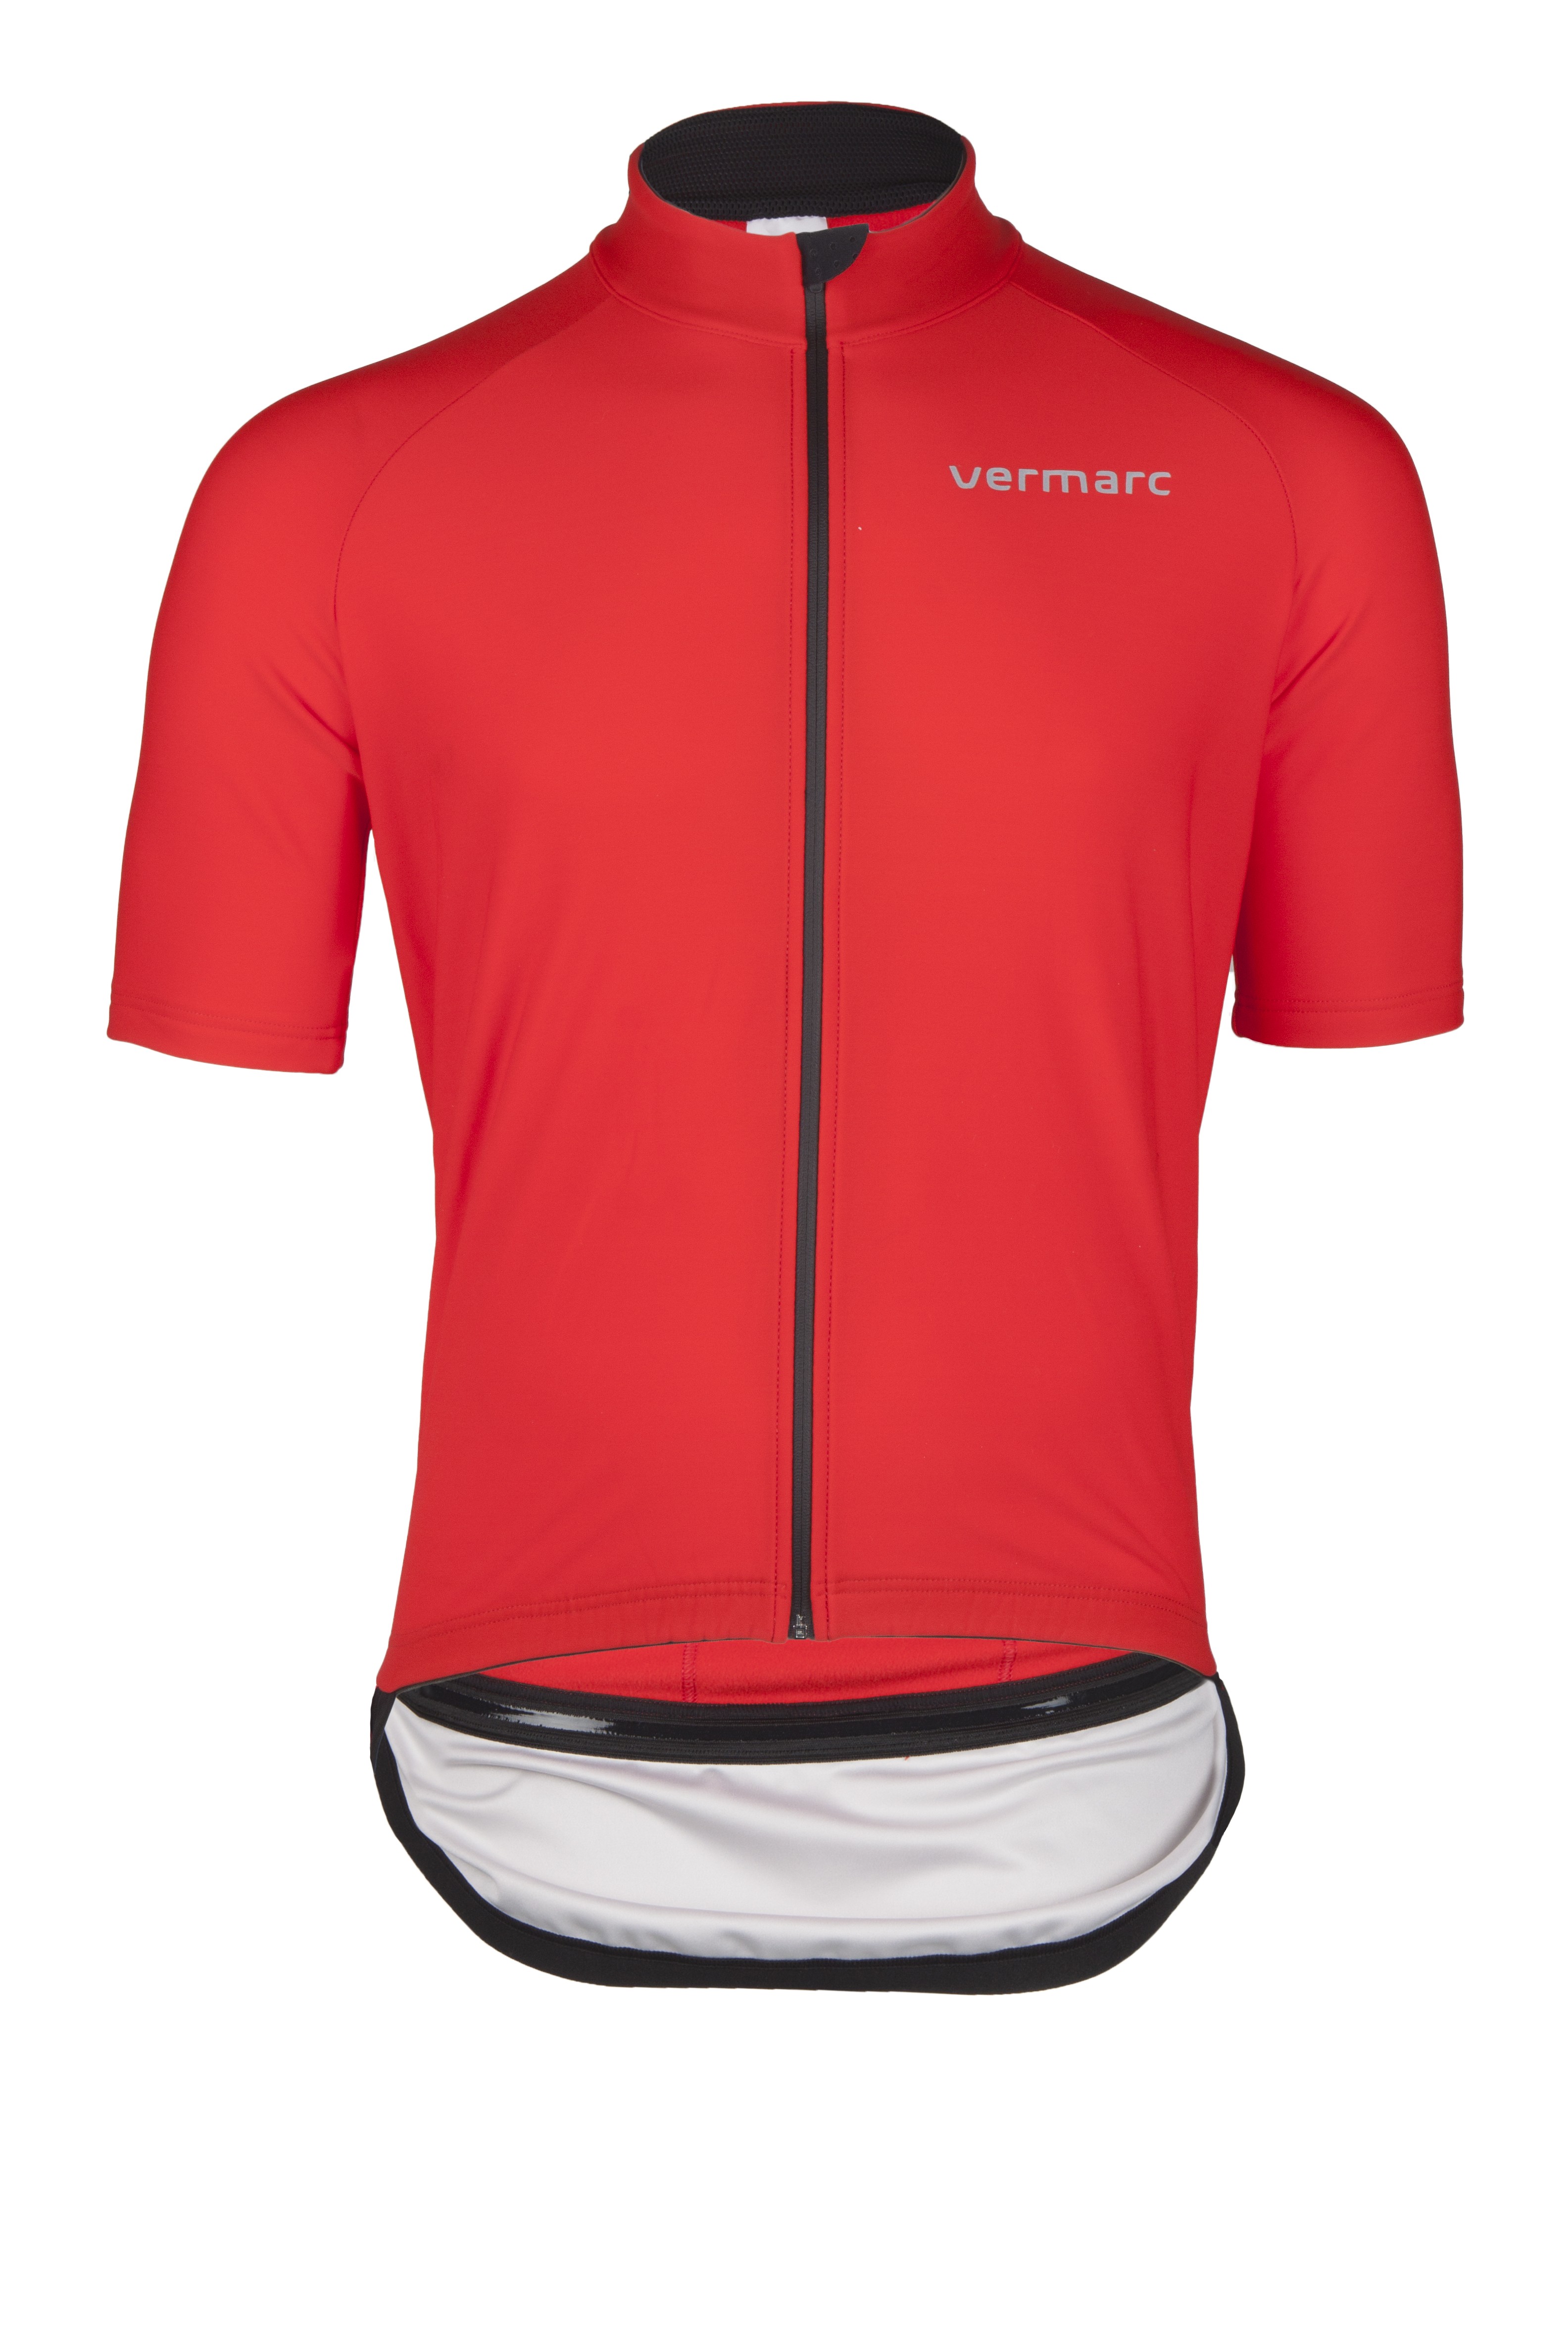 Vermarc zero aqua maillot de cyclisme manches courtes rouge